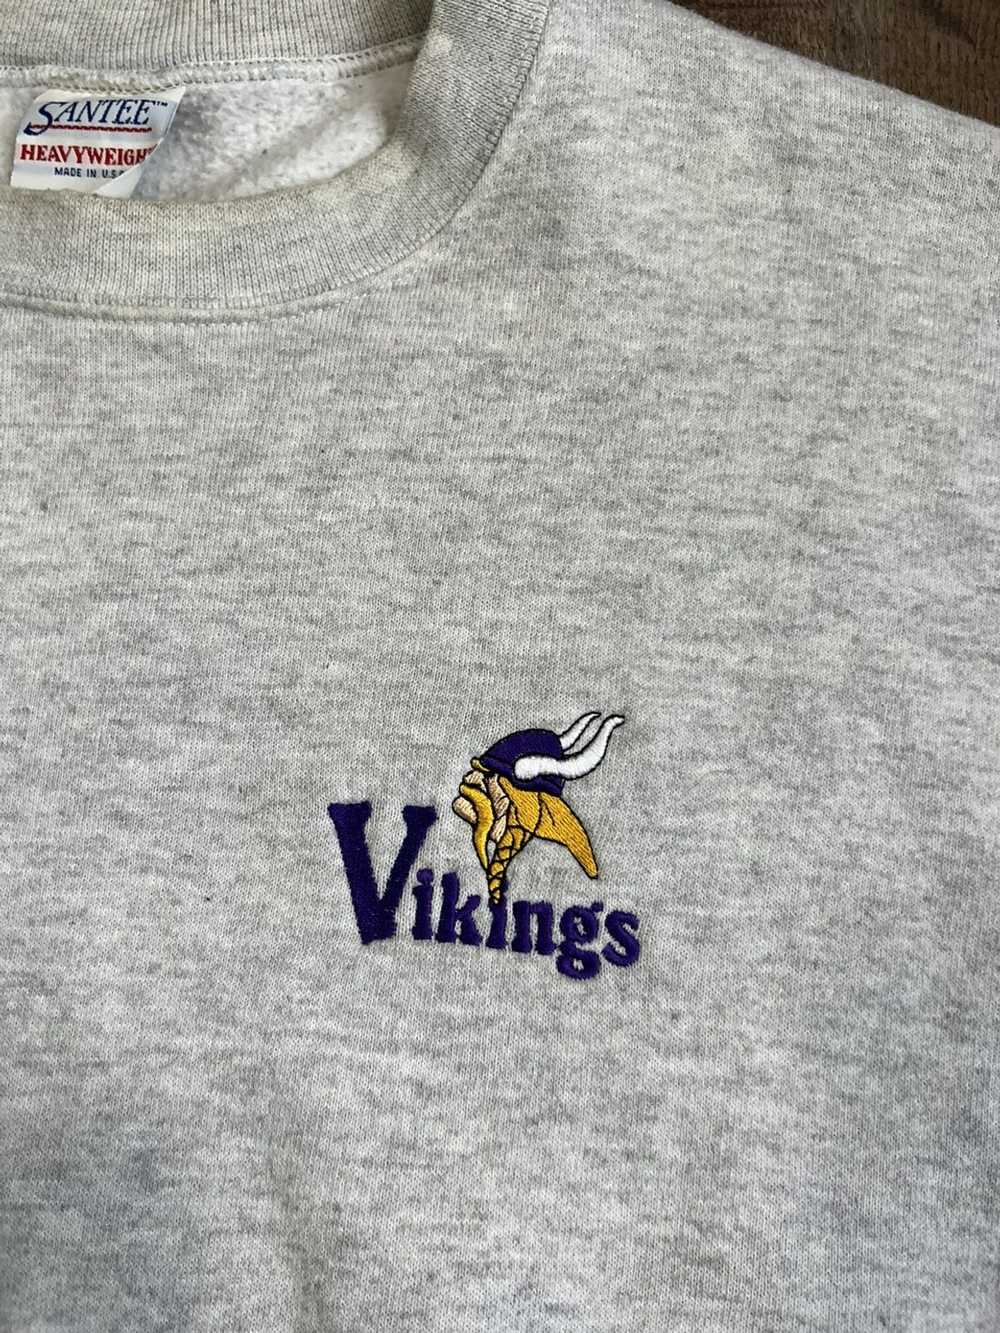 Vintage Vintage Minnesota Vikings Sweatshirt - image 3